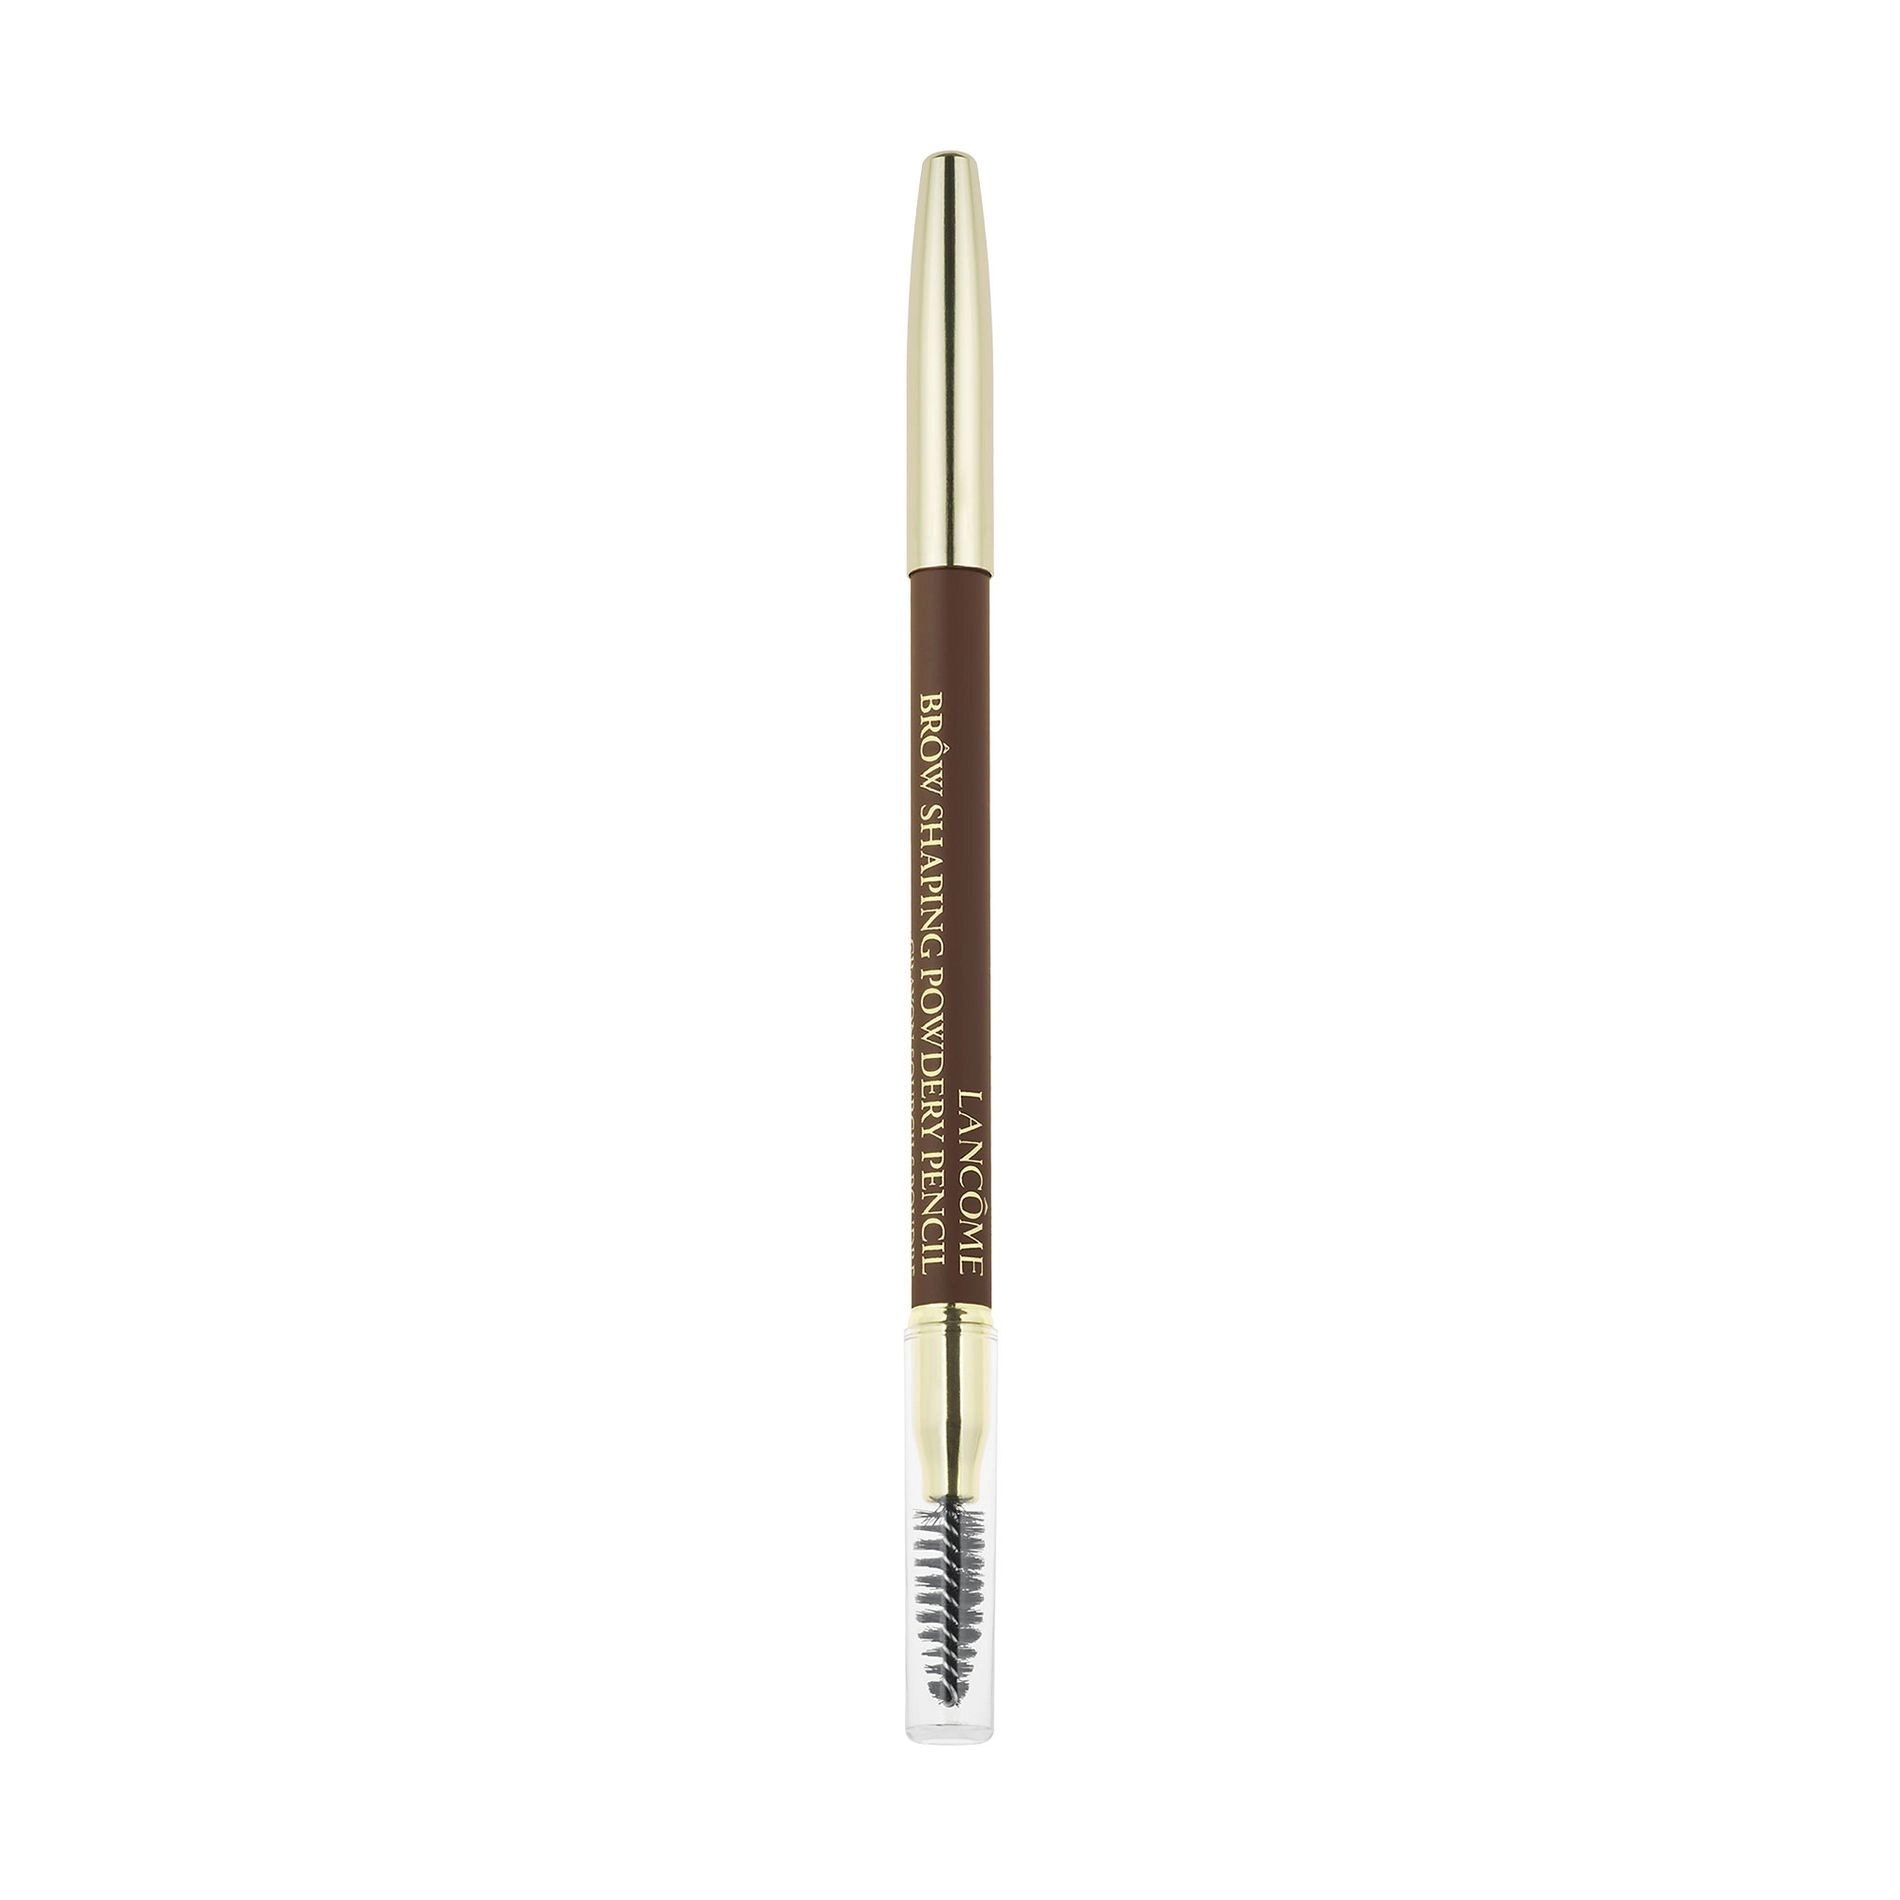 Lancome Карандаш для бровей Brow Shaping Powdery Pencil 05 Chestnut, 1.19 г - фото N1